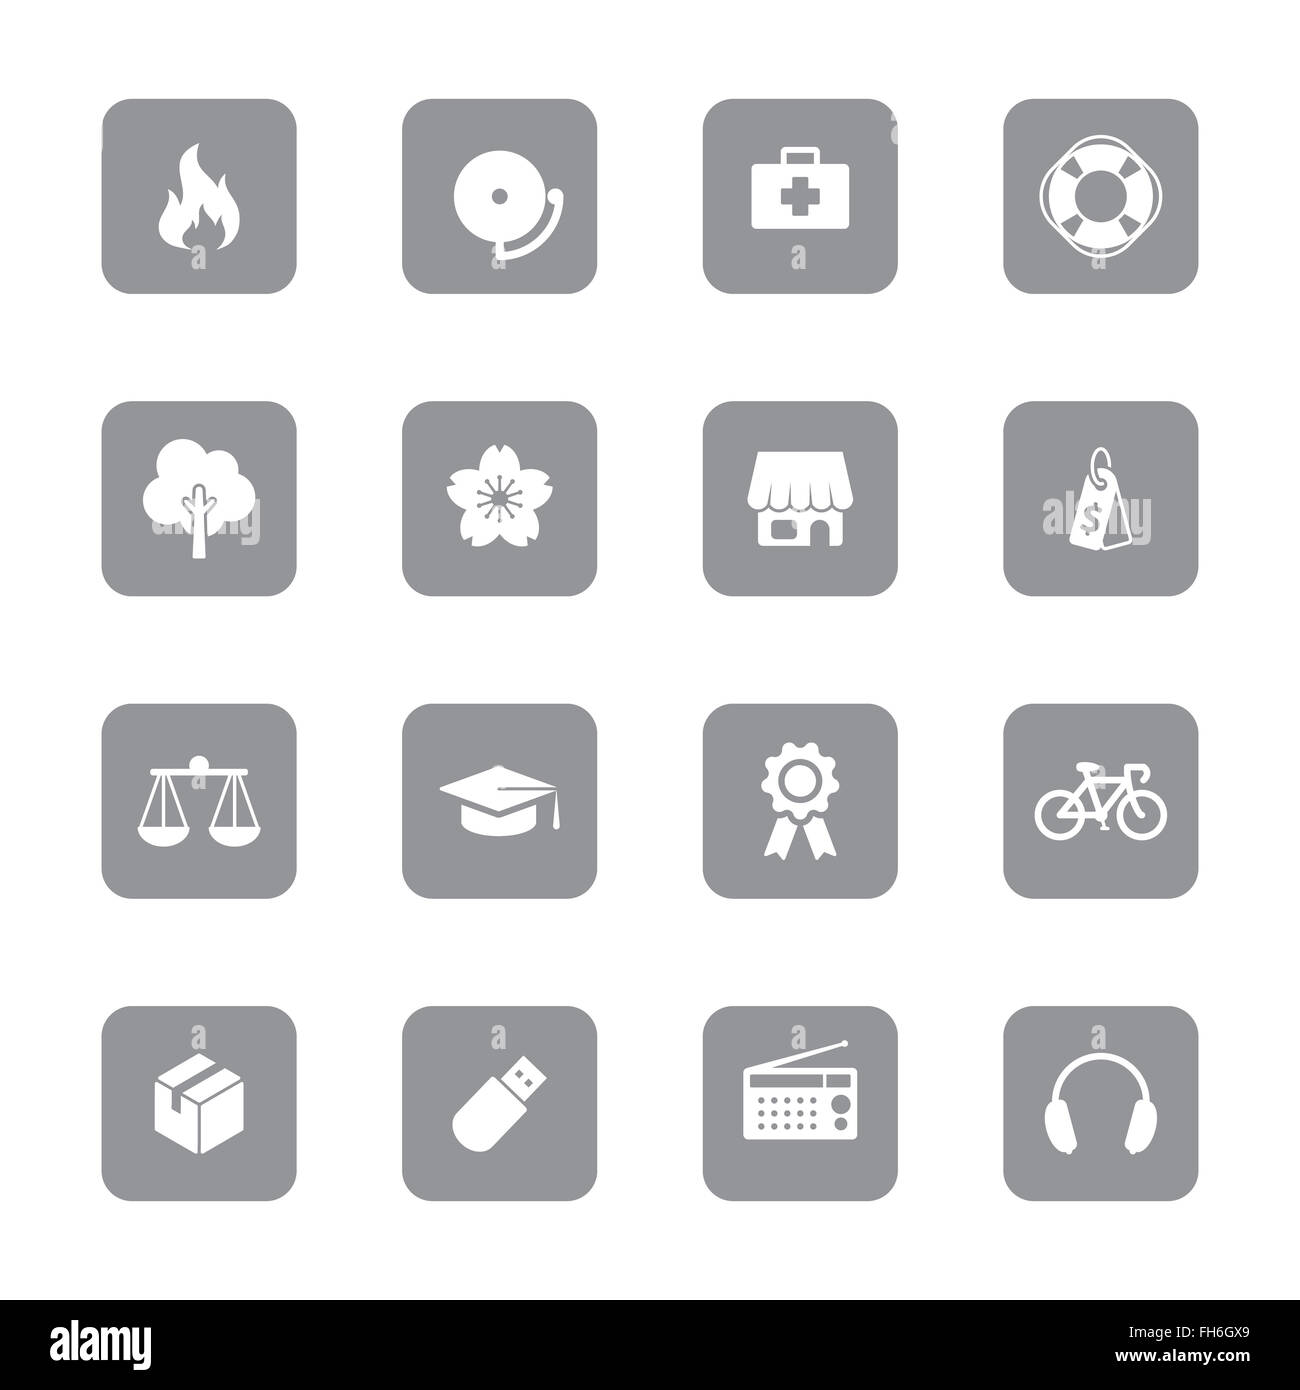 [JPEG] web icon set 6 gris sur rectangle arrondi pour le web design, l'interface utilisateur (IU), l'infographie et de l'application mobile (apps) Banque D'Images